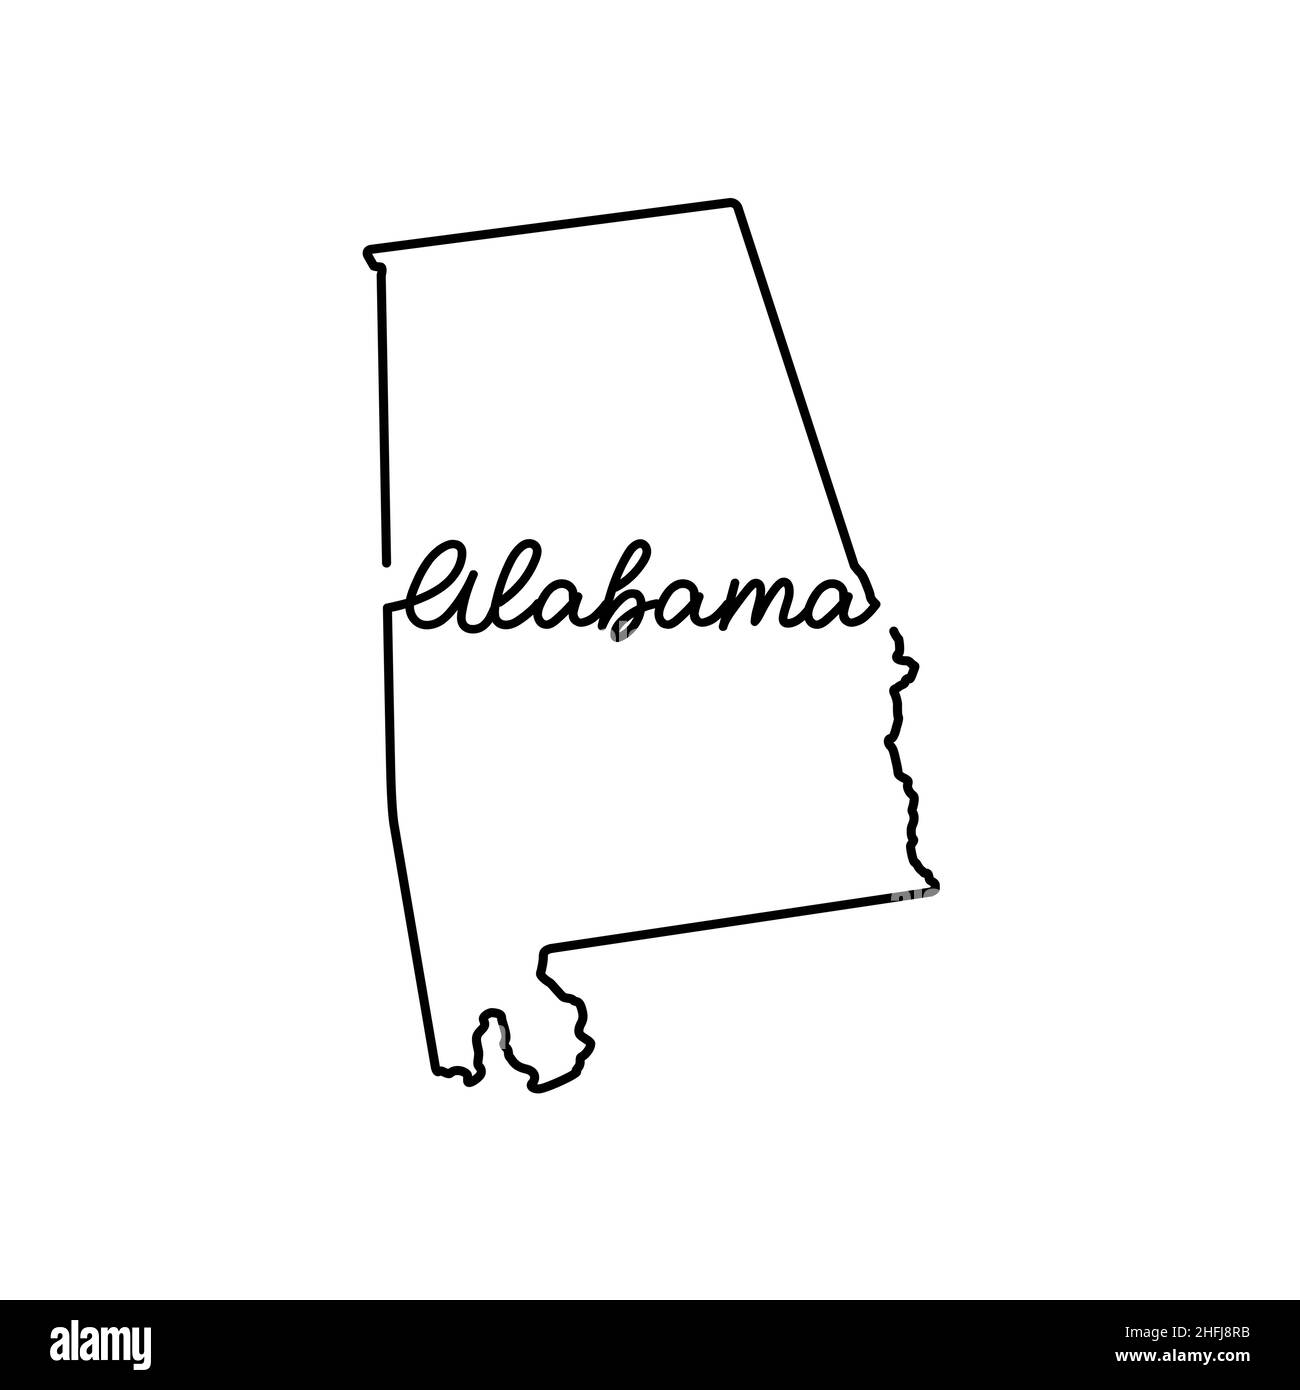 Plan de l'état américain de l'Alabama avec le nom de l'état manuscrit.Dessin de ligne continue de signe de maison patriotique.Un amour pour une petite patrie.t-shirt pri Illustration de Vecteur